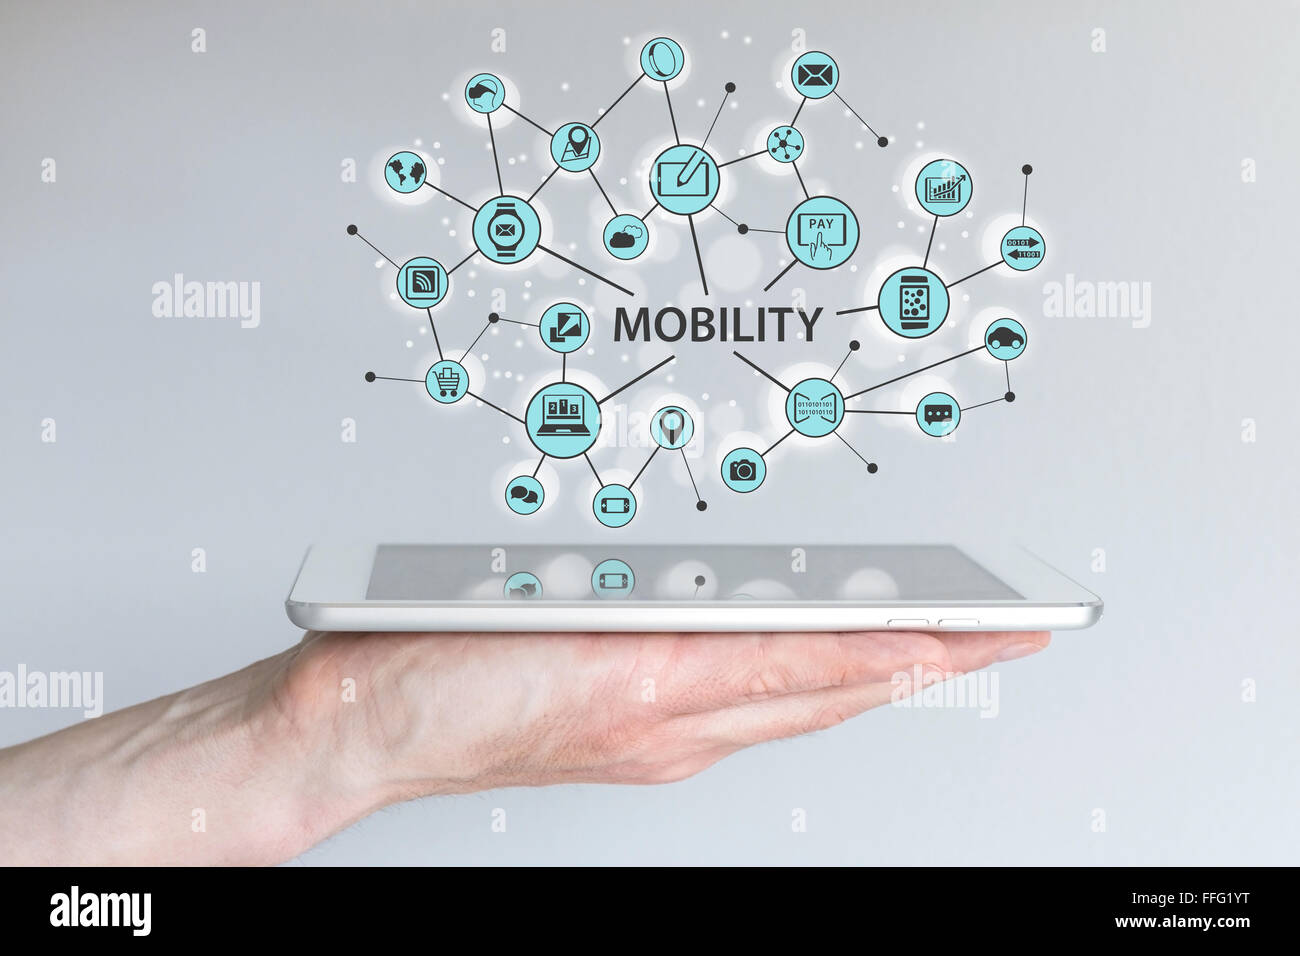 Concept de mobilité. Homme hand holding smart phone ou tablette moderne avec une illustration d'appareils mobiles connectés. Banque D'Images